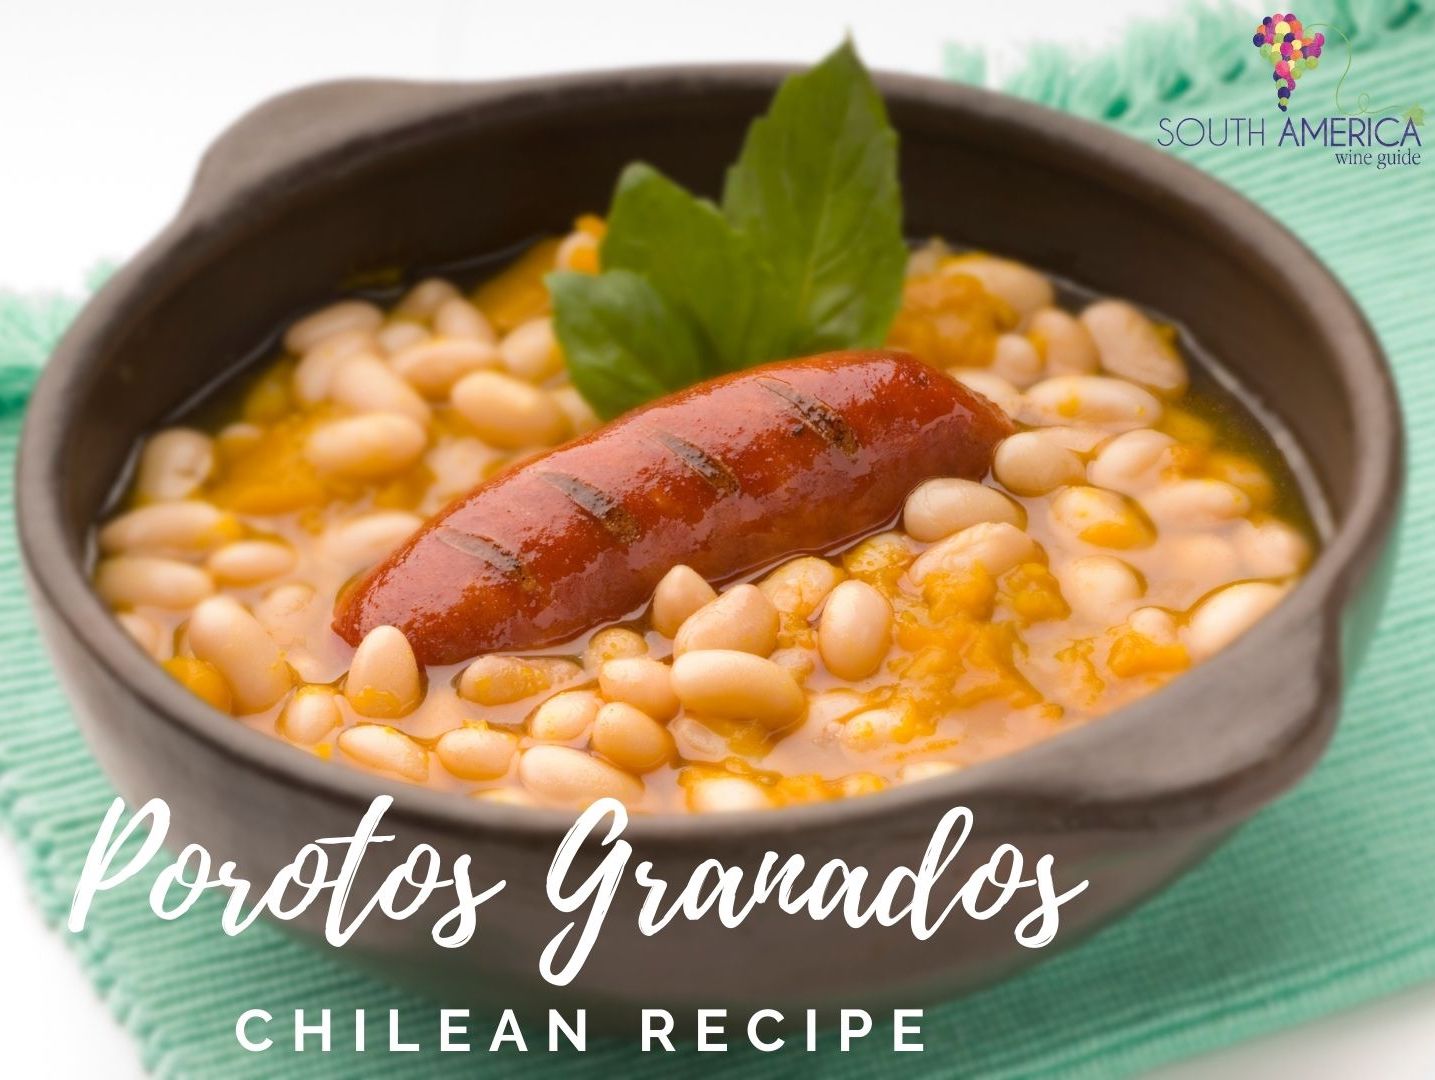 ultimate chilean porotos granados recipe